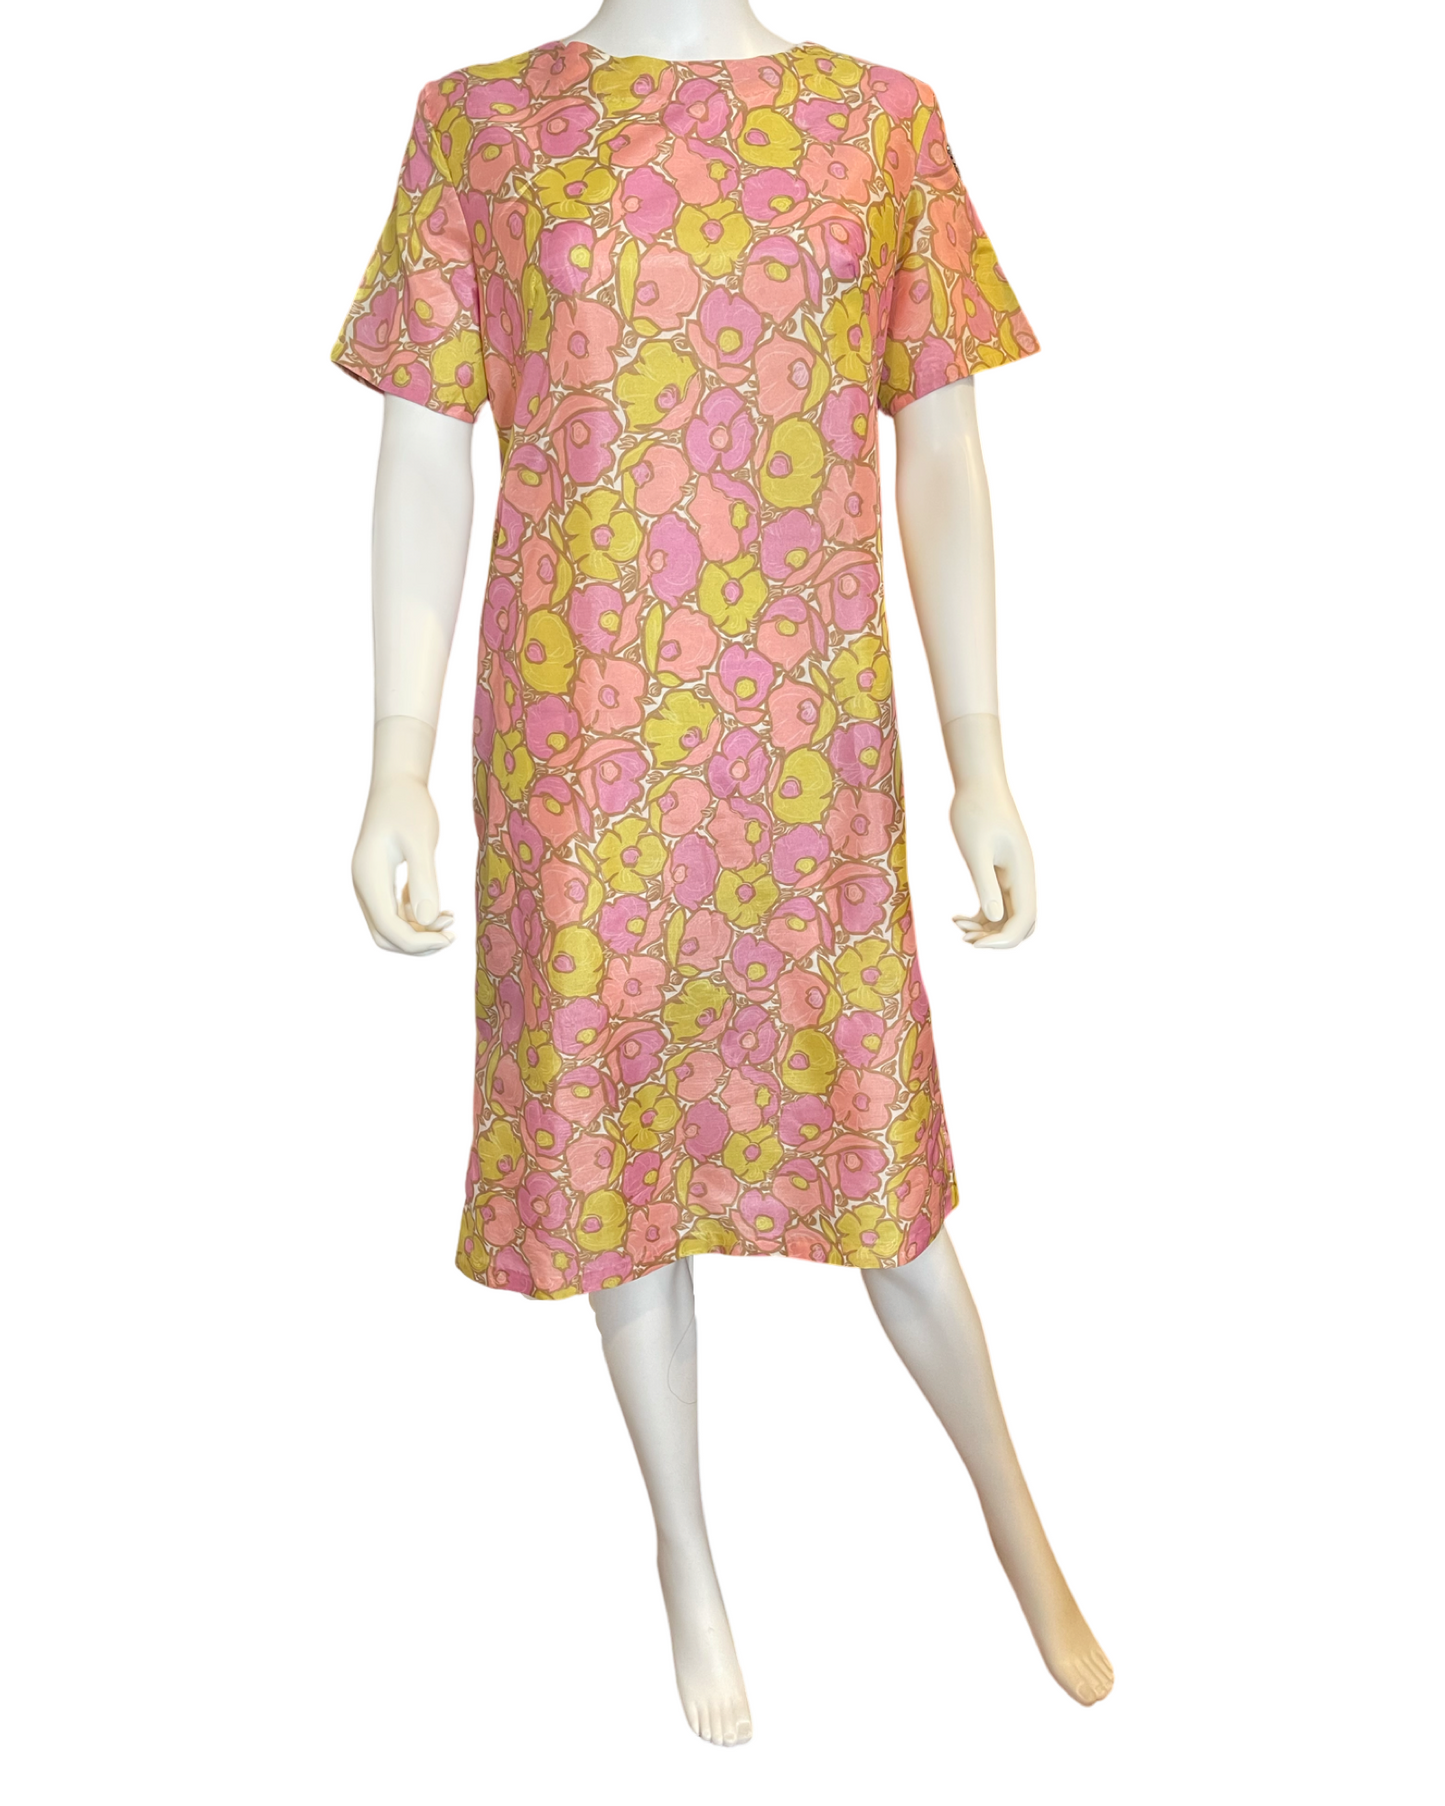 Vintage 60’s Floral Shift Dress